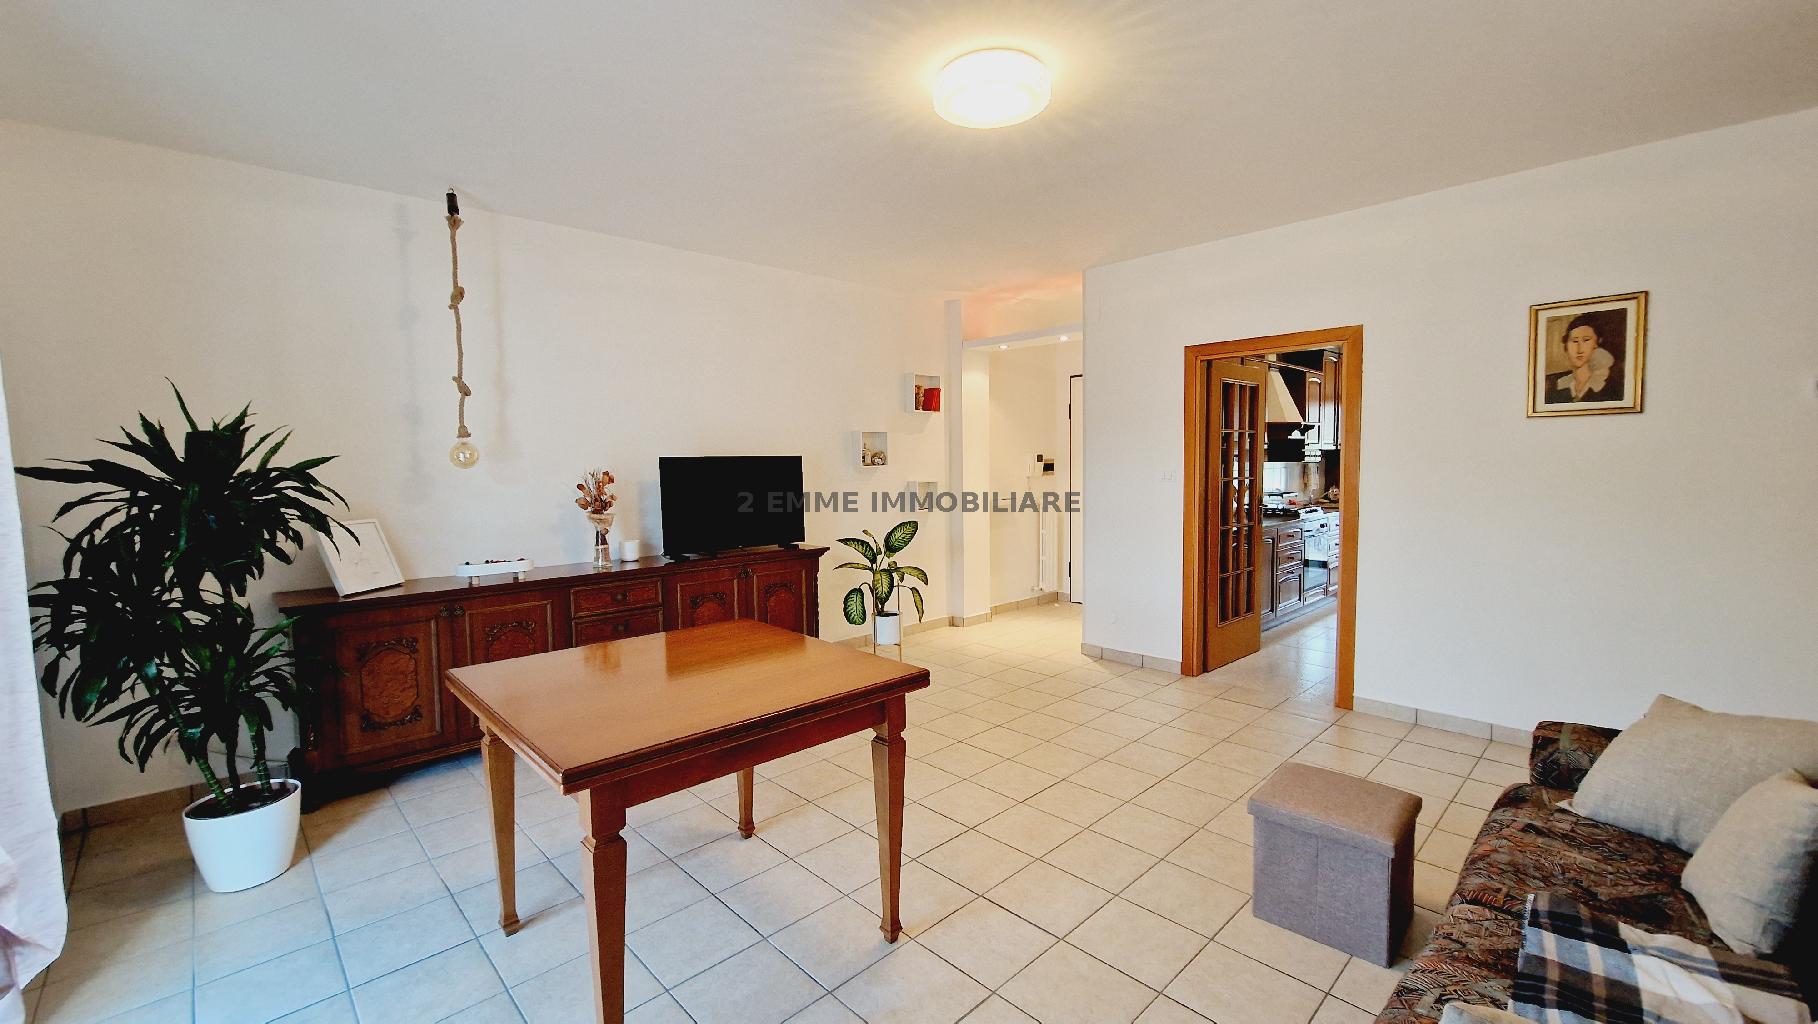 Appartamento in vendita in via salaria inferiore 27, Ascoli Piceno